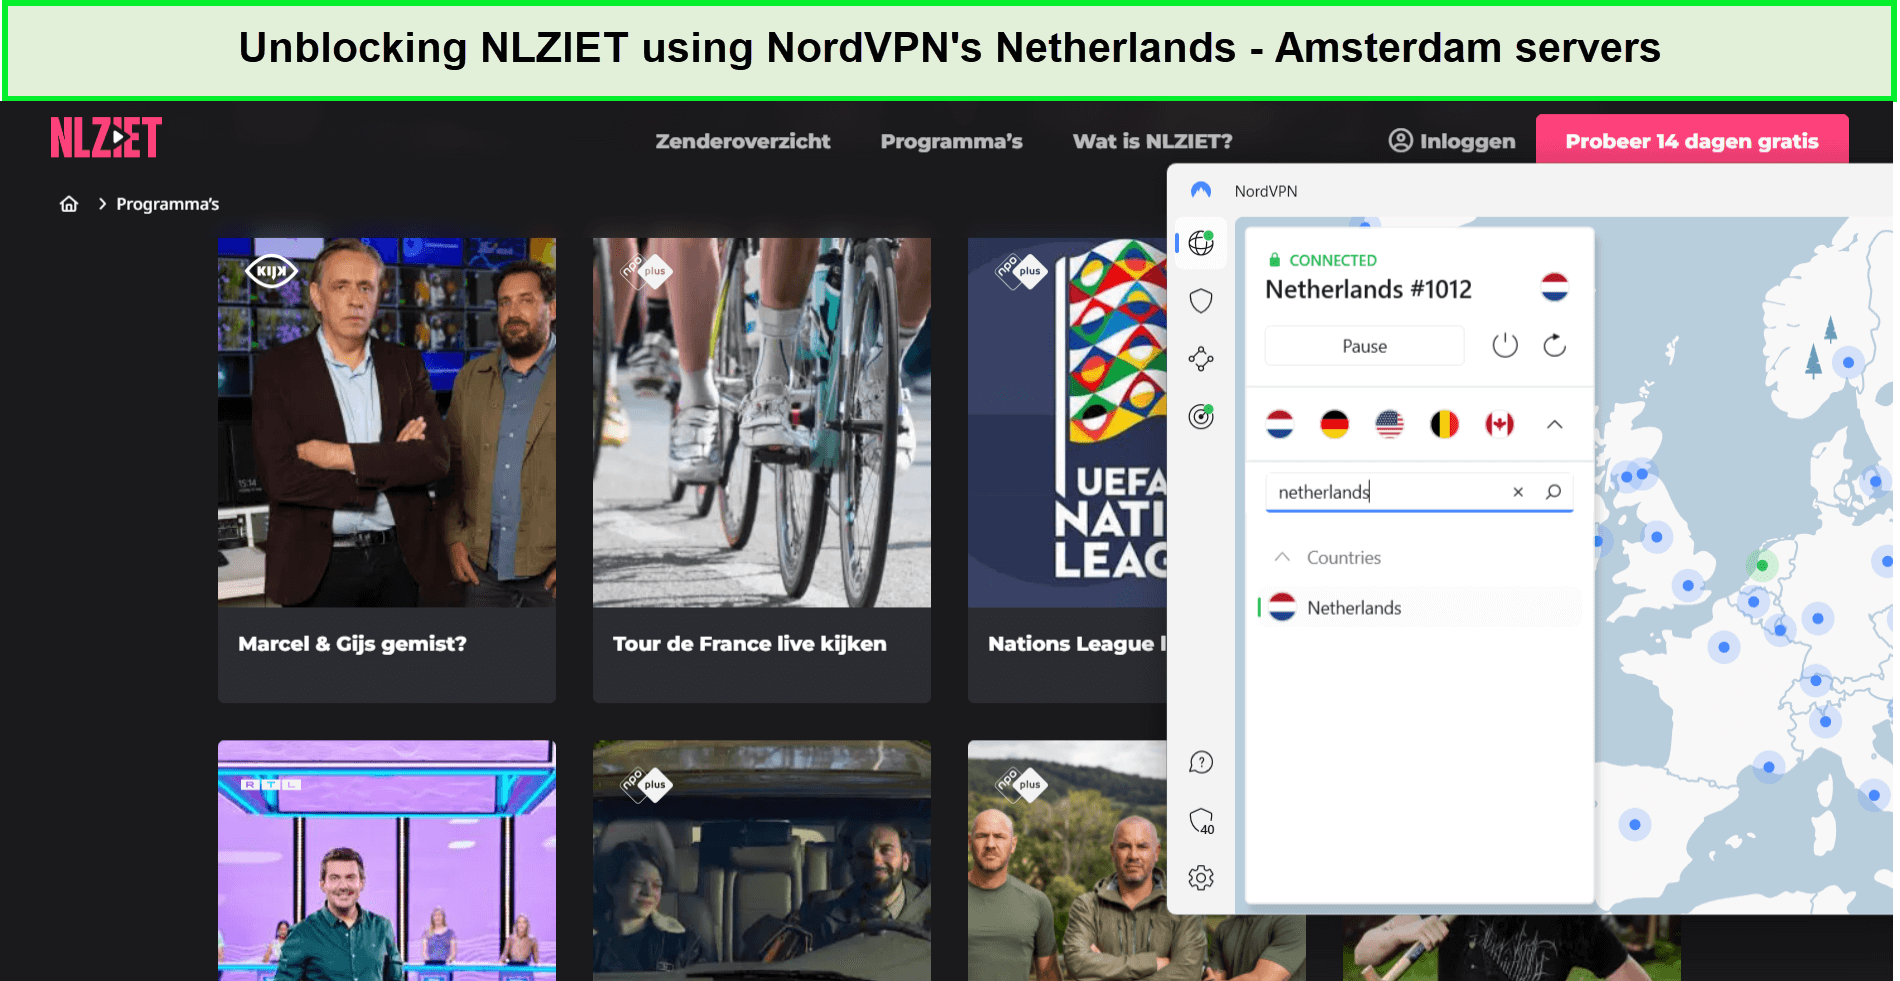 nlziet-unblocked-with-nordvpn